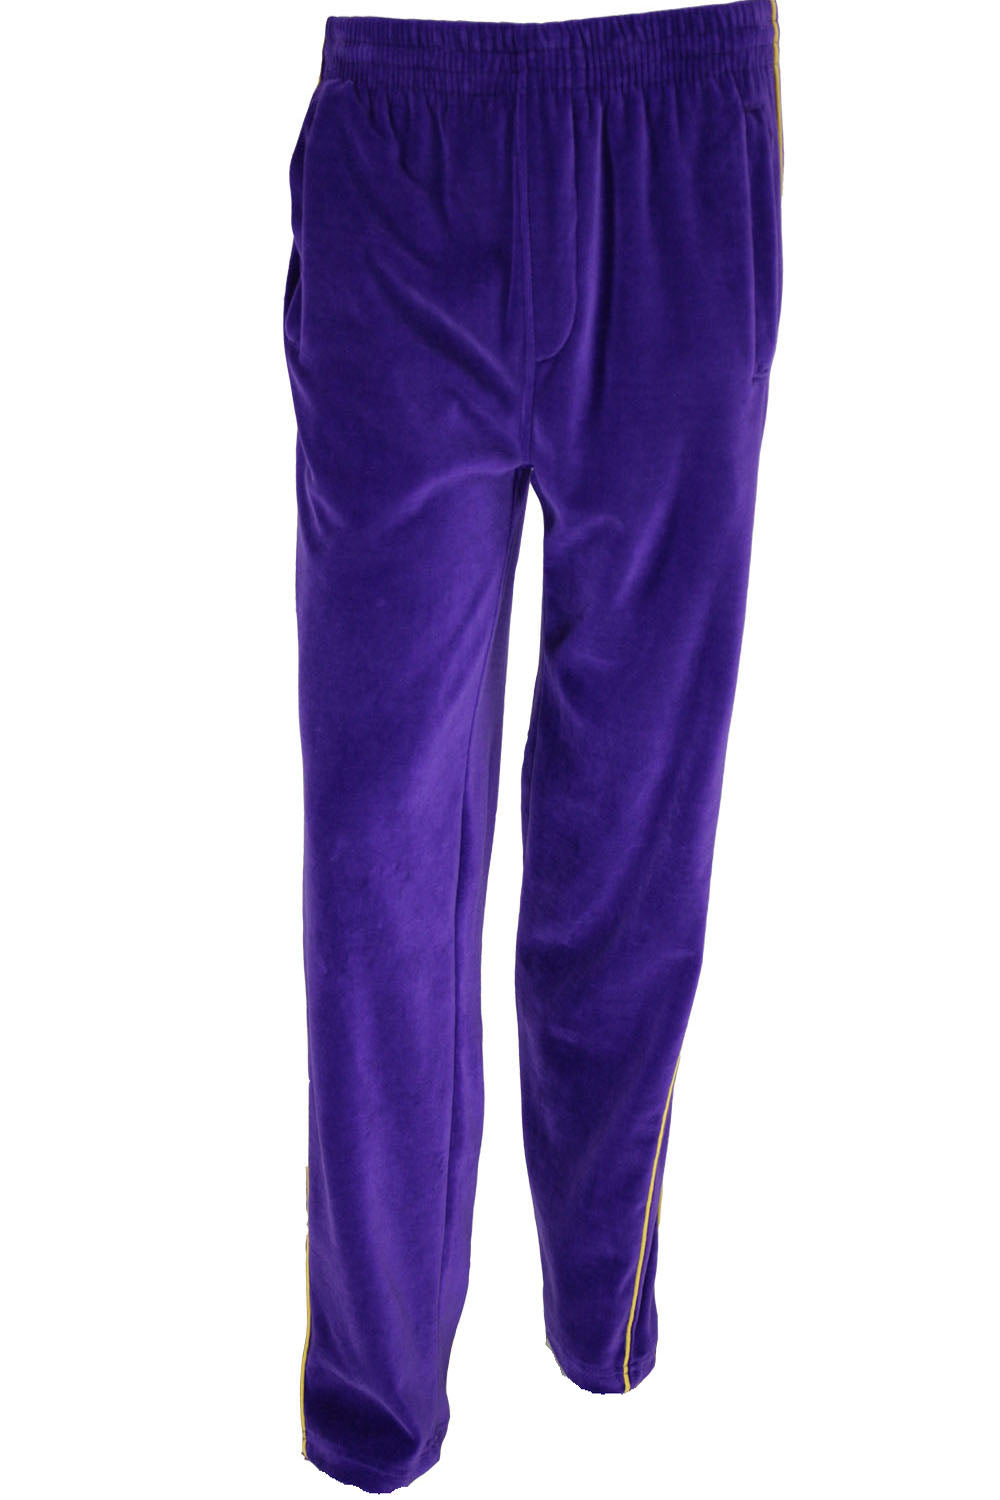 Mens Purple Velour Pants, Sweatpants